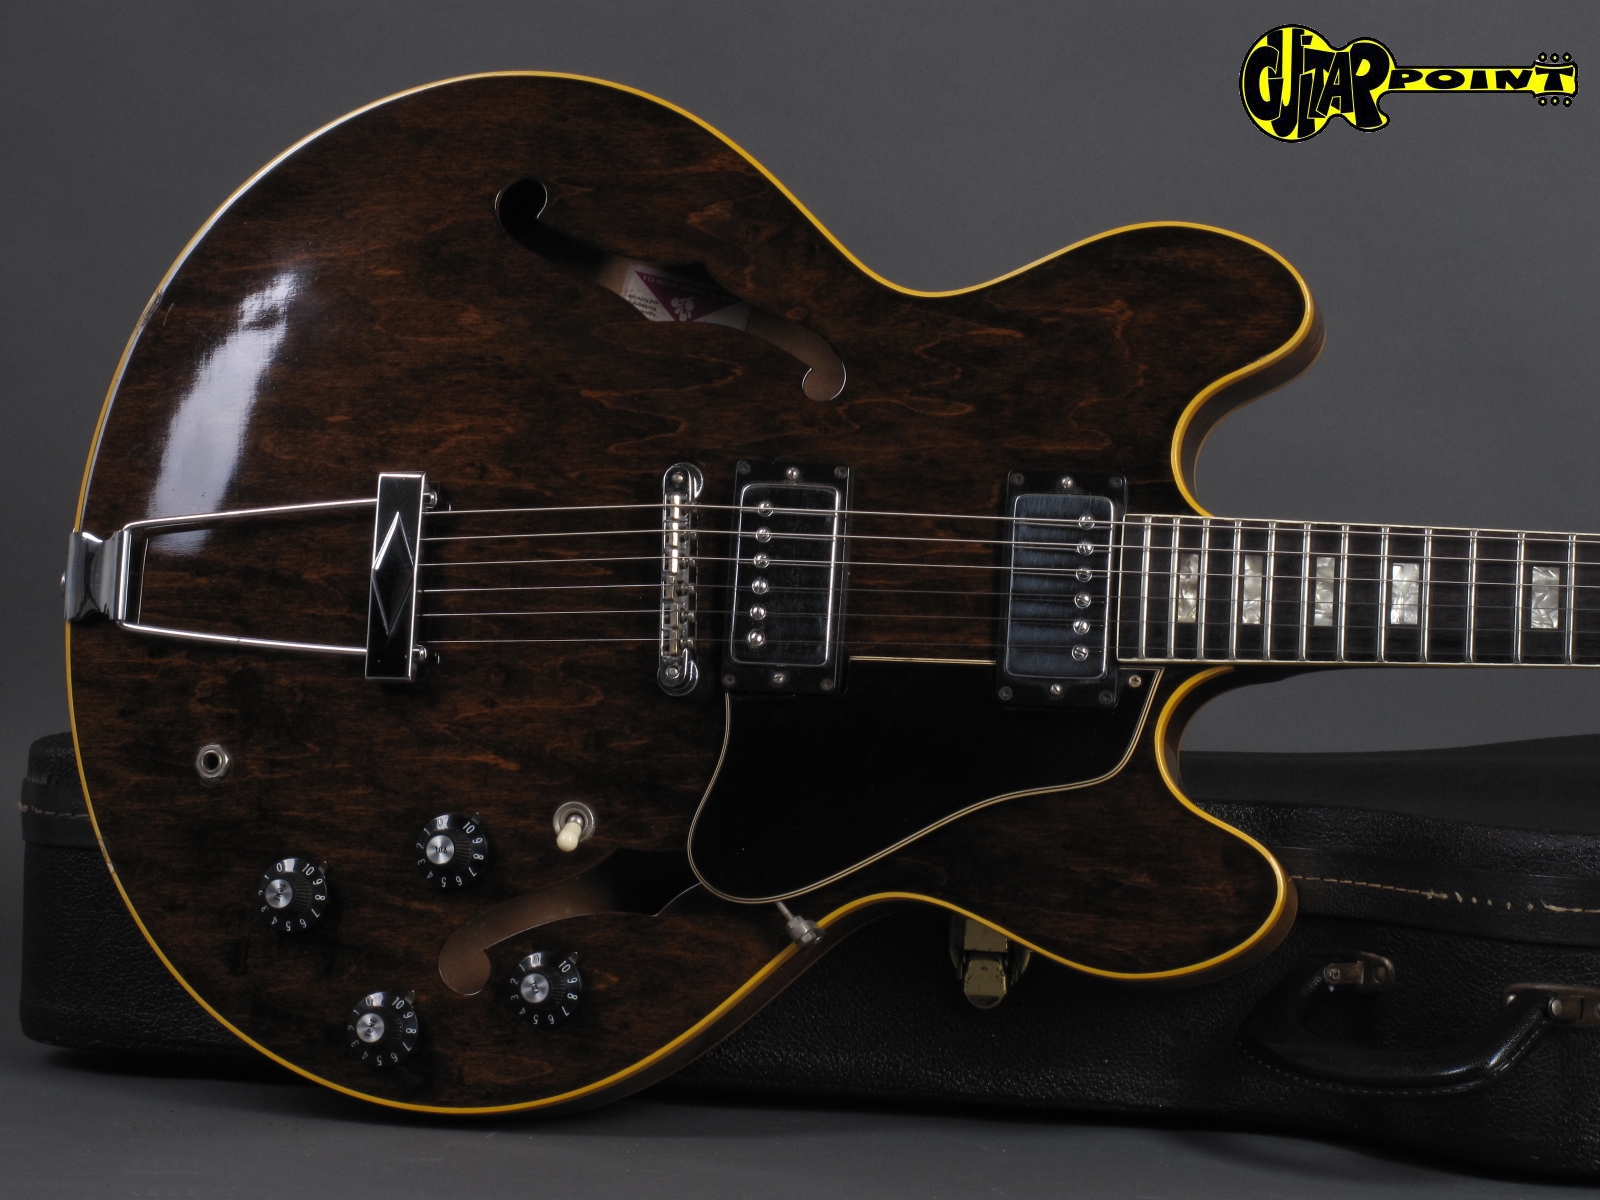 Gibson Es 335 Td 1972 Walnut Guitar For Sale Guitarpoint